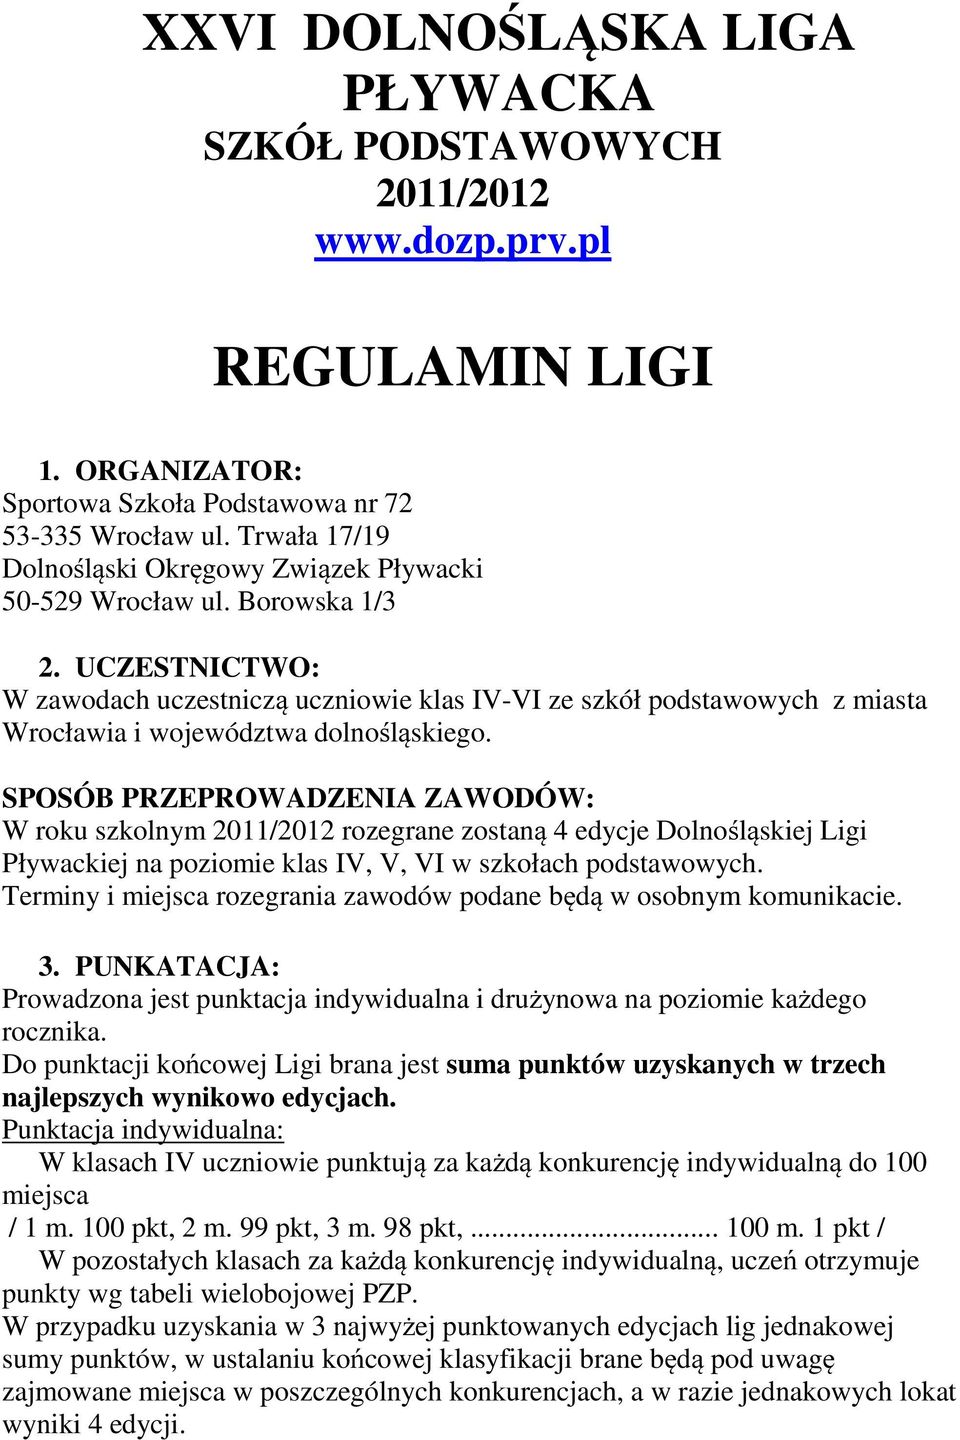 UCZESTNICTWO: W zawodach uczestniczą uczniowie klas IV-VI ze szkół podstawowych z miasta Wrocławia i województwa dolnośląskiego.